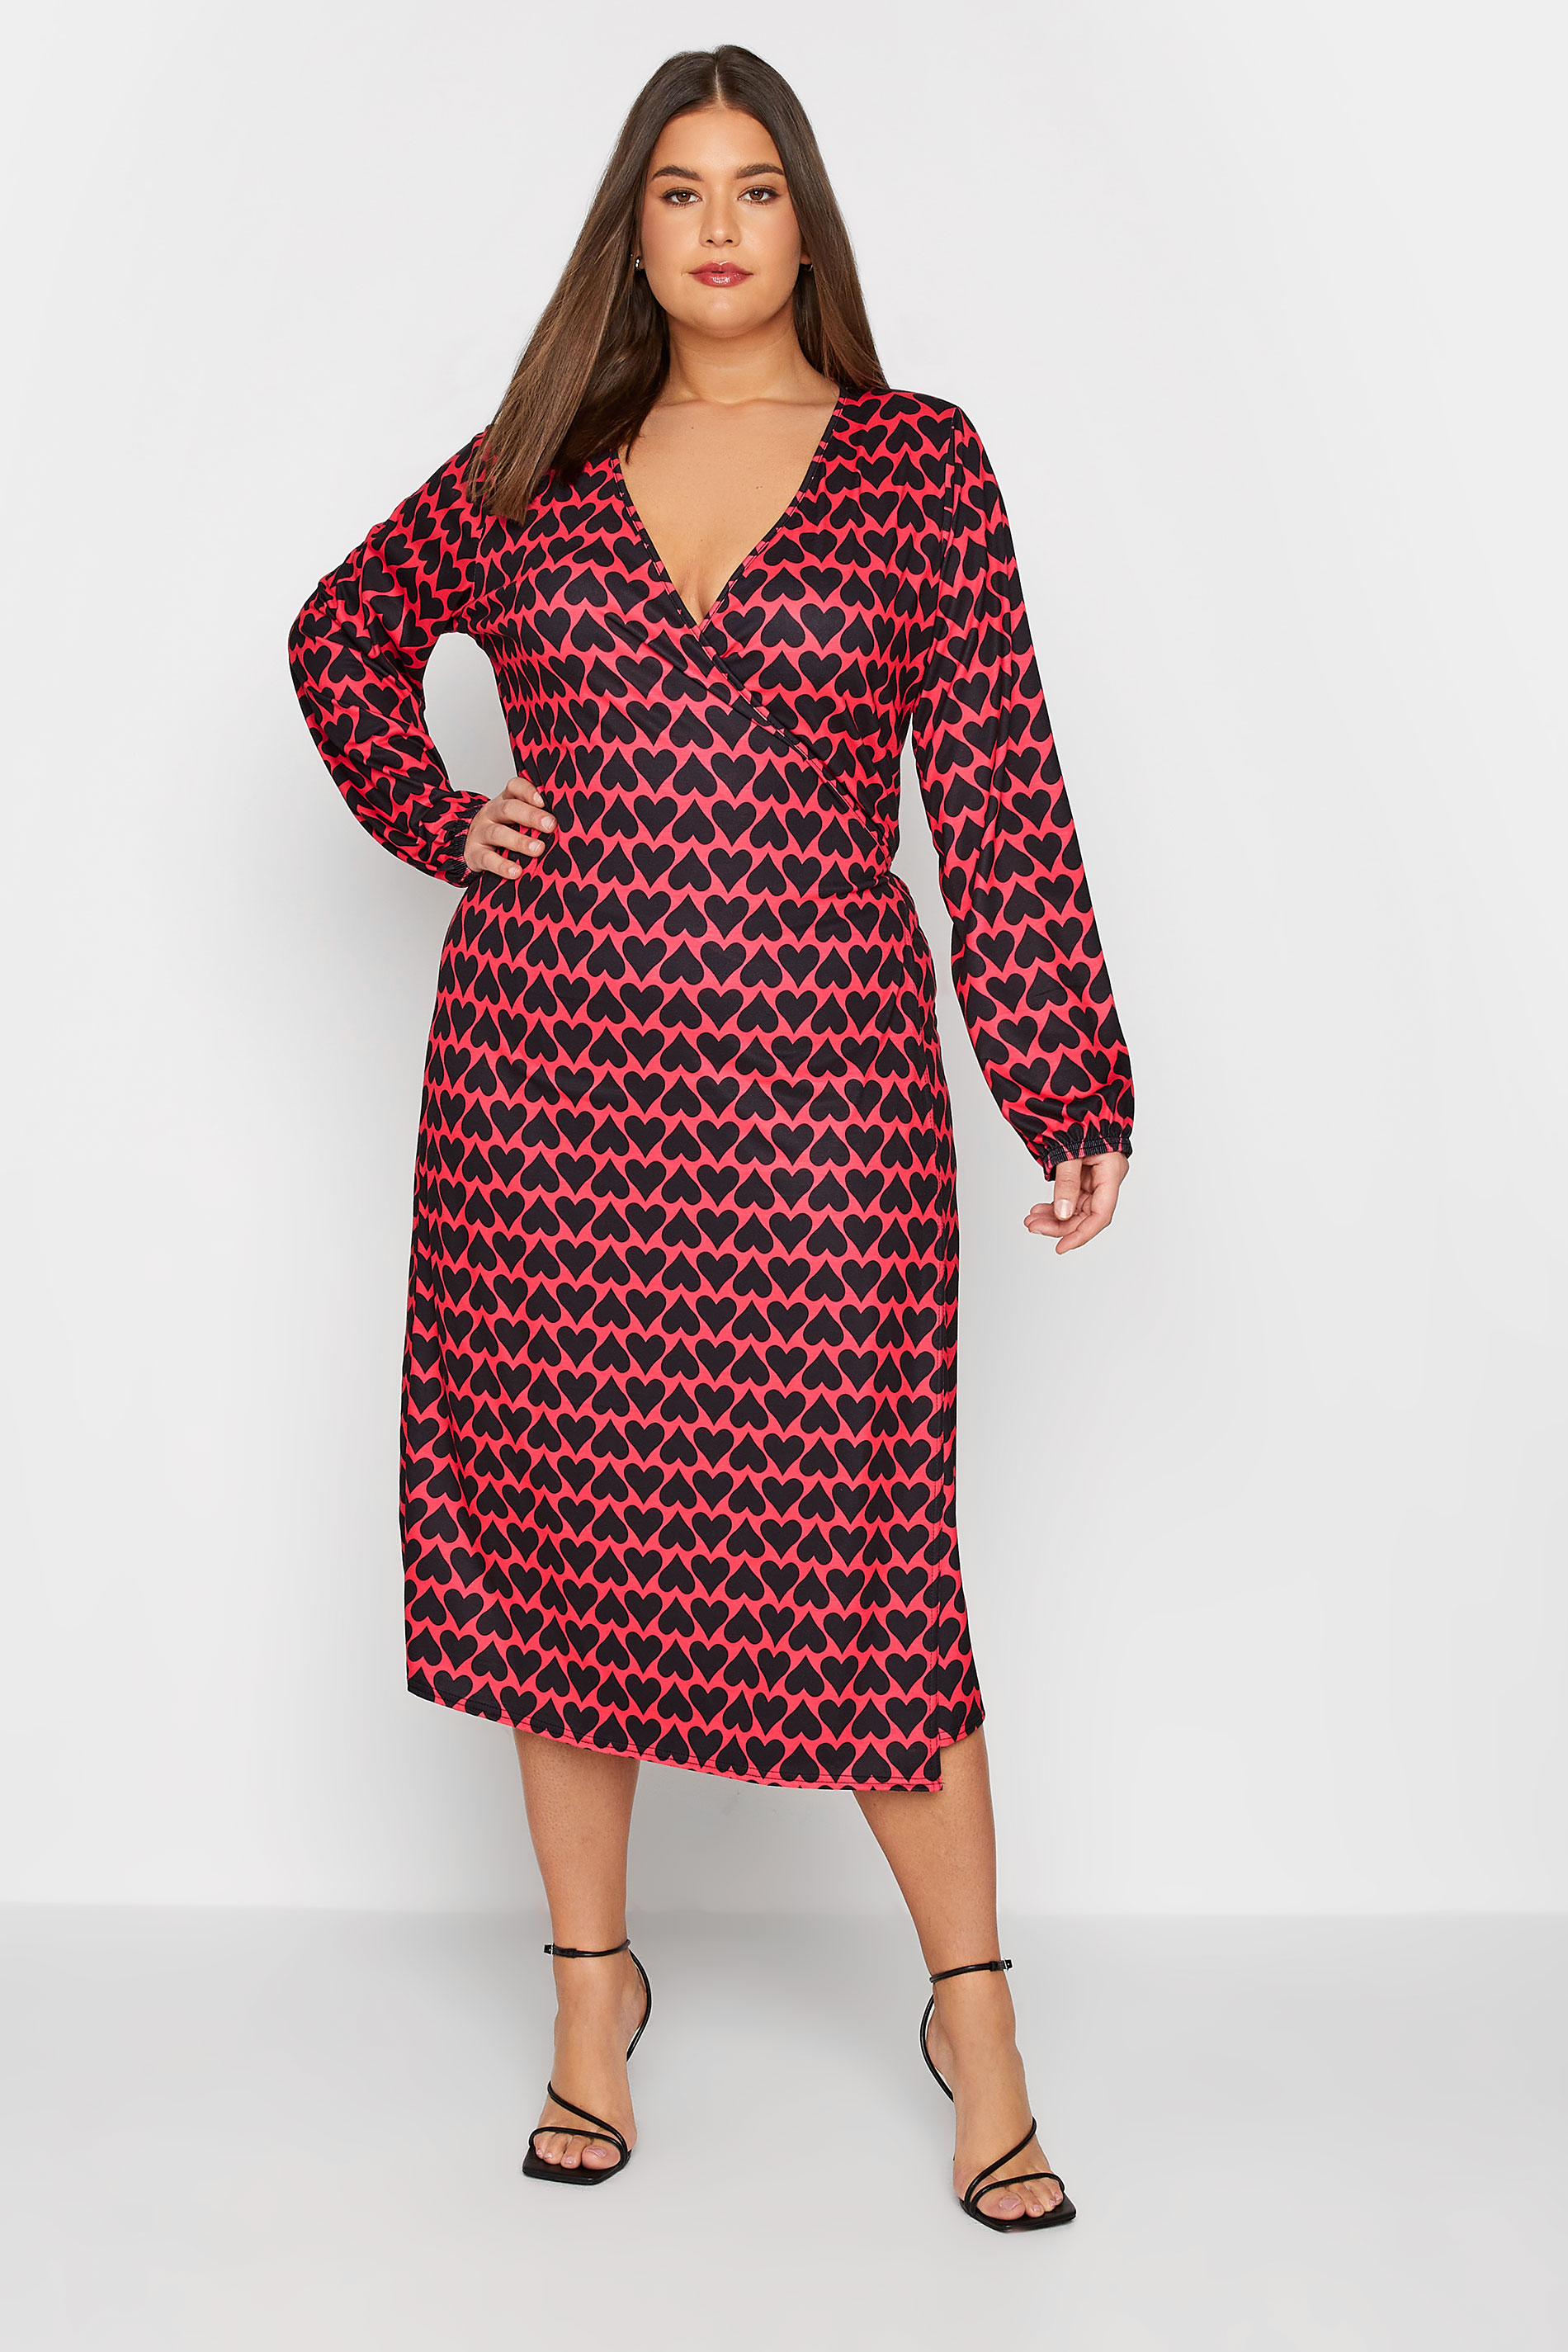 LTS Tall Red & Black Heart Print Midi Wrap Dress | Long Tall Sally  2